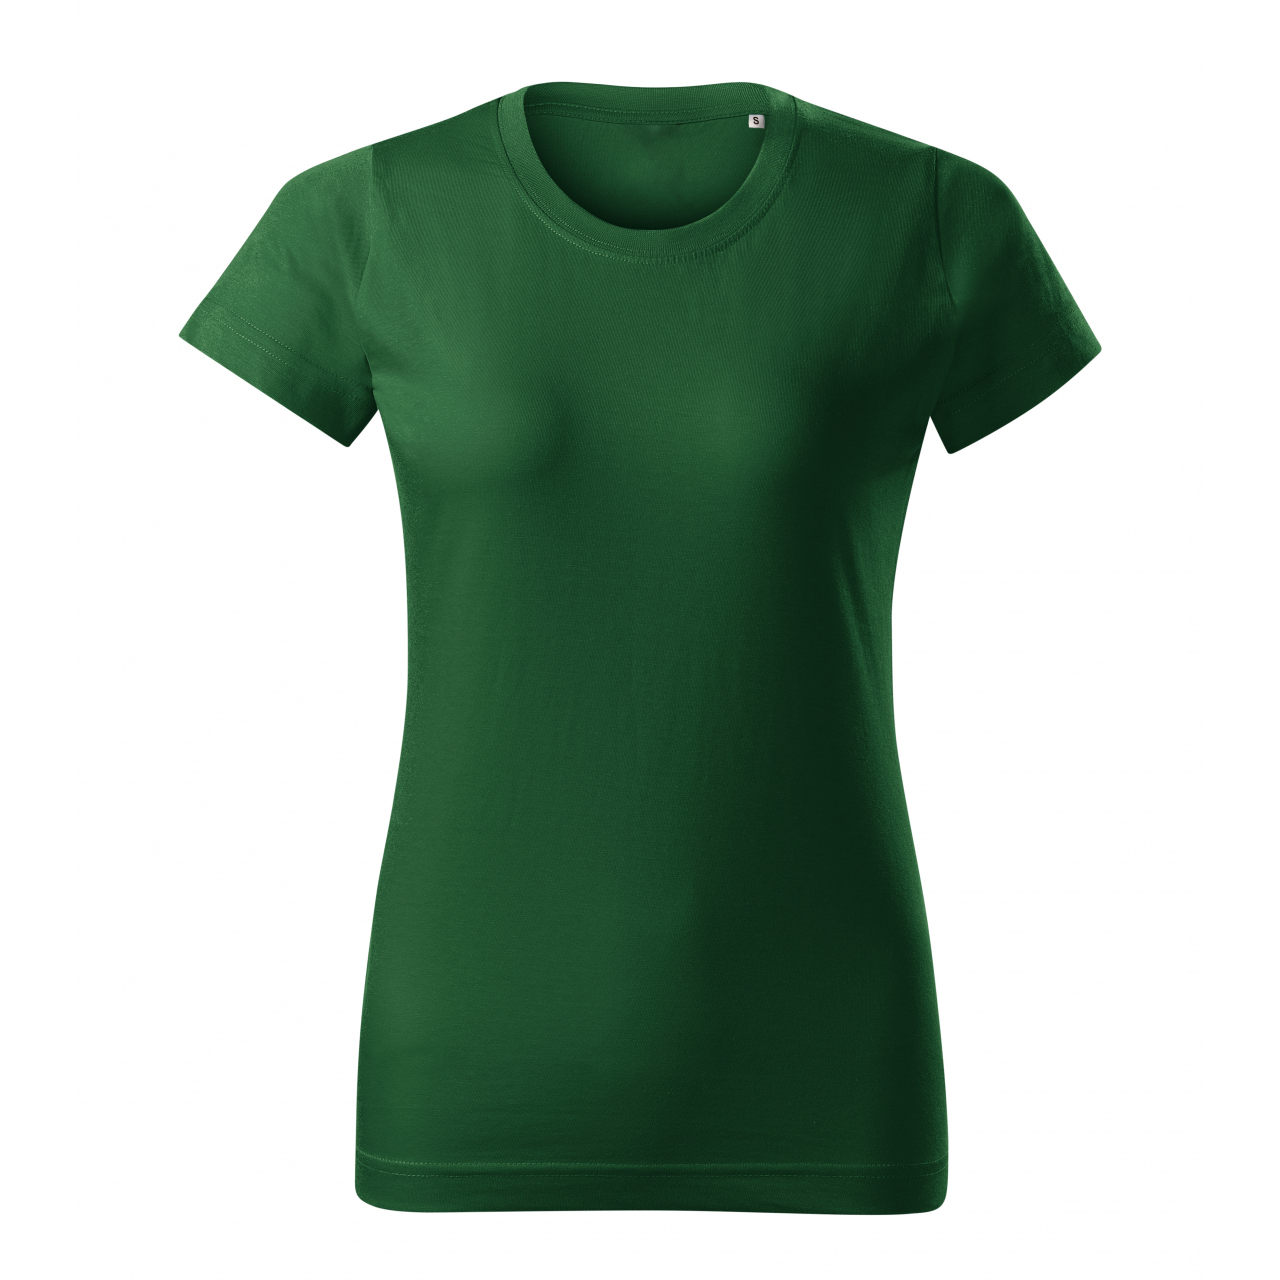 Tričko dámské Malfini Basic Free - tmavě zelené, XS